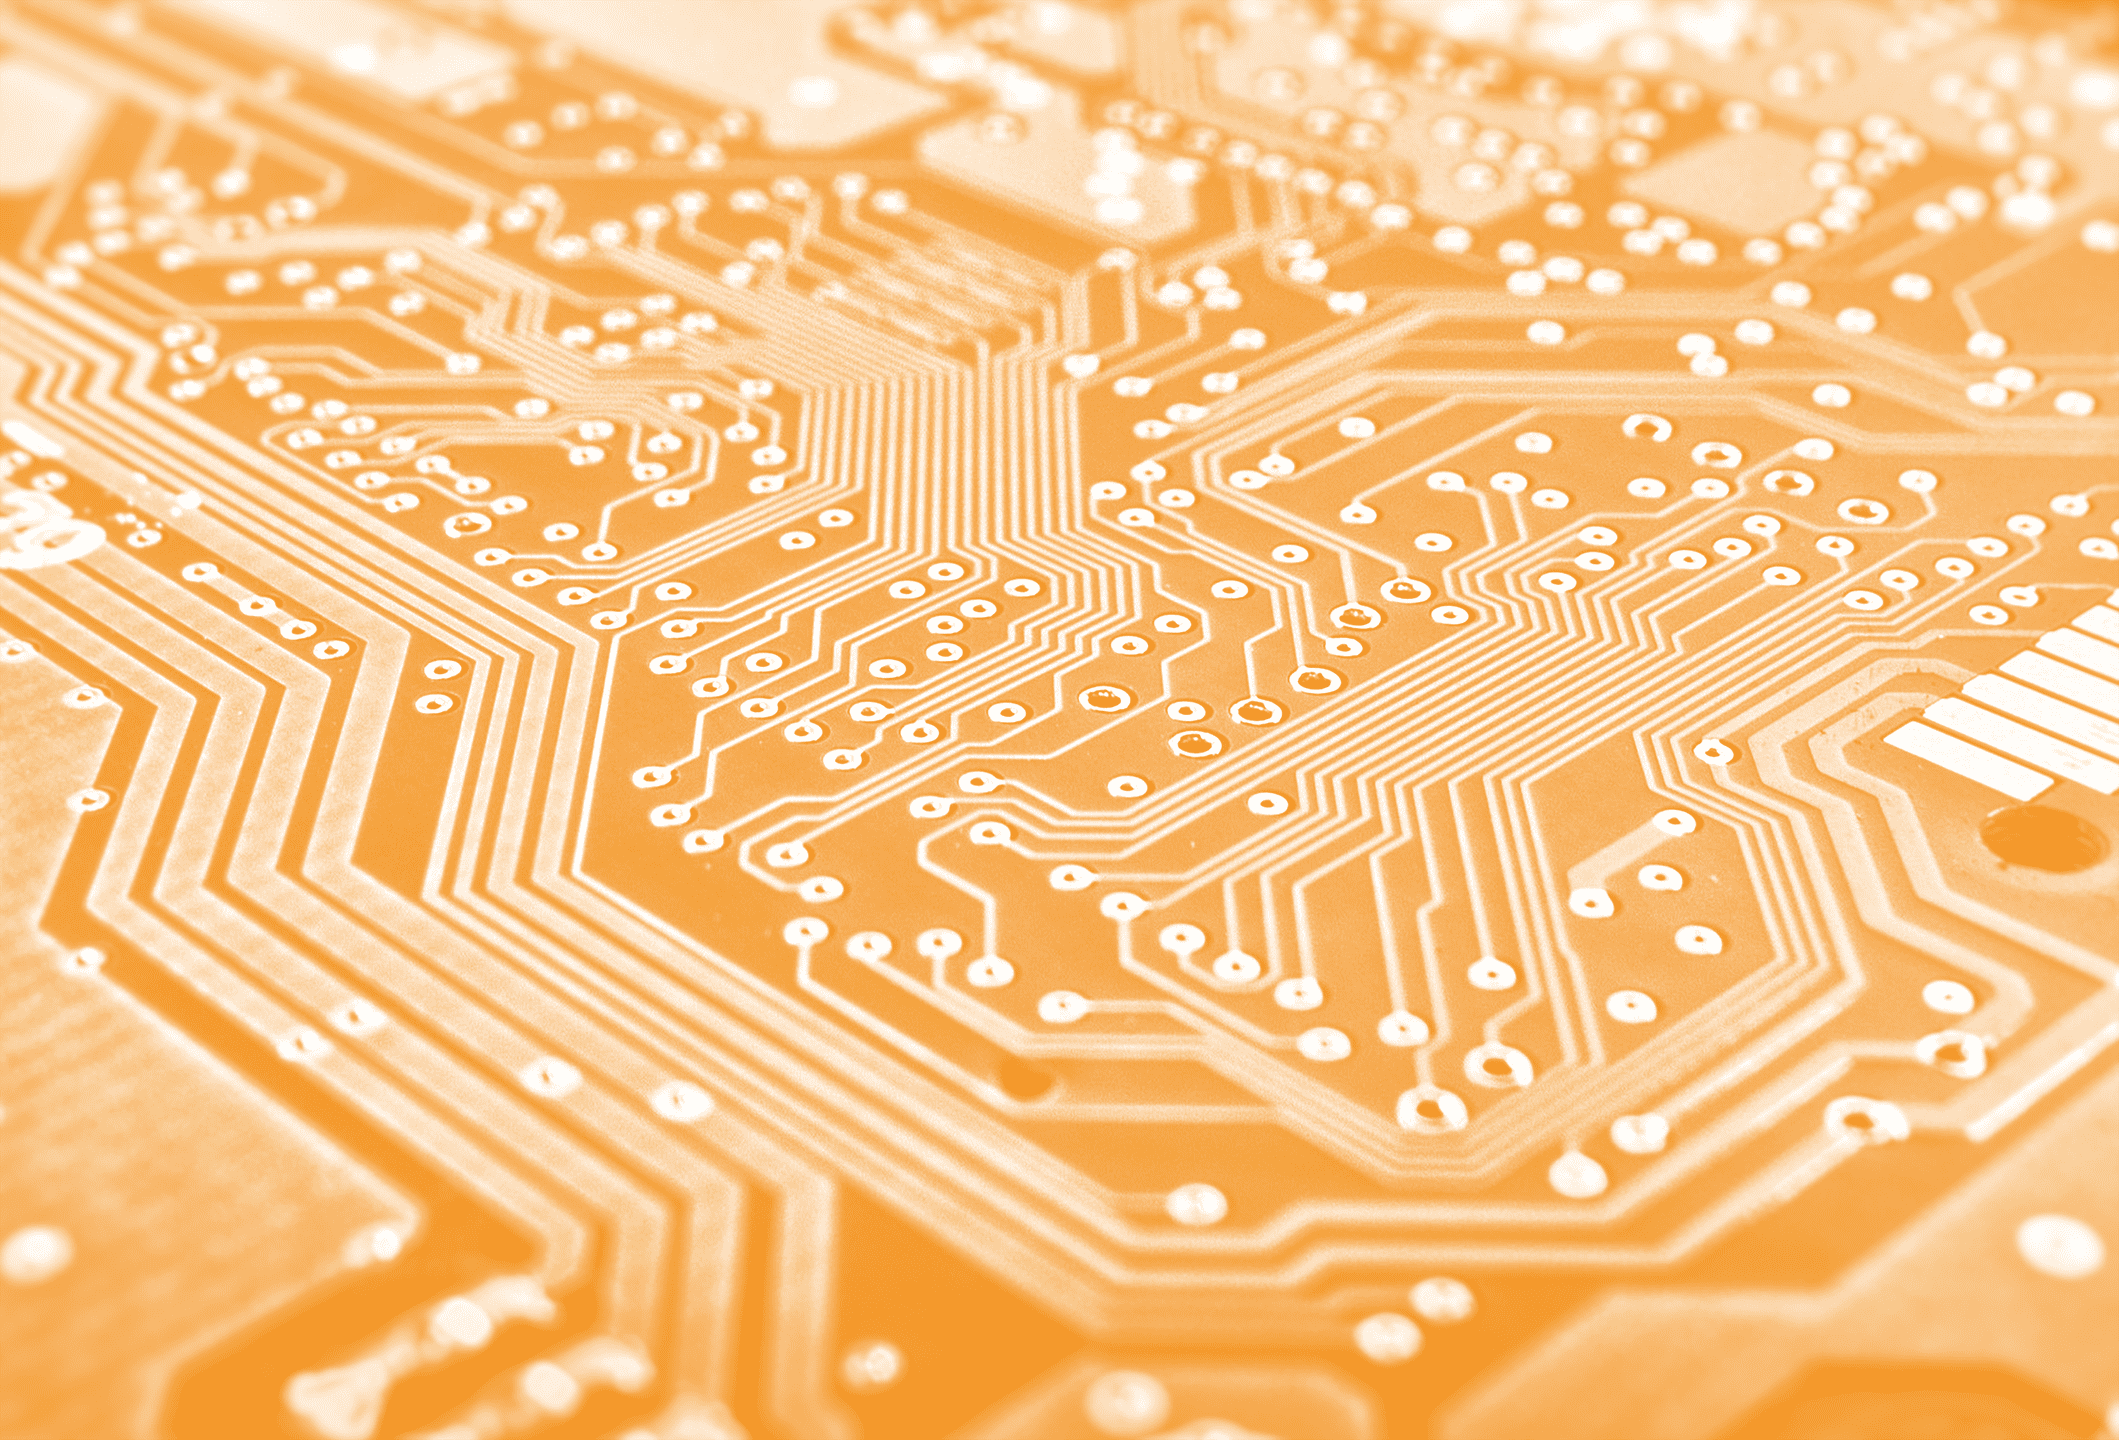 Sfondo di componenti elettronici, composto da una scheda PCB di colore arancione aziendale